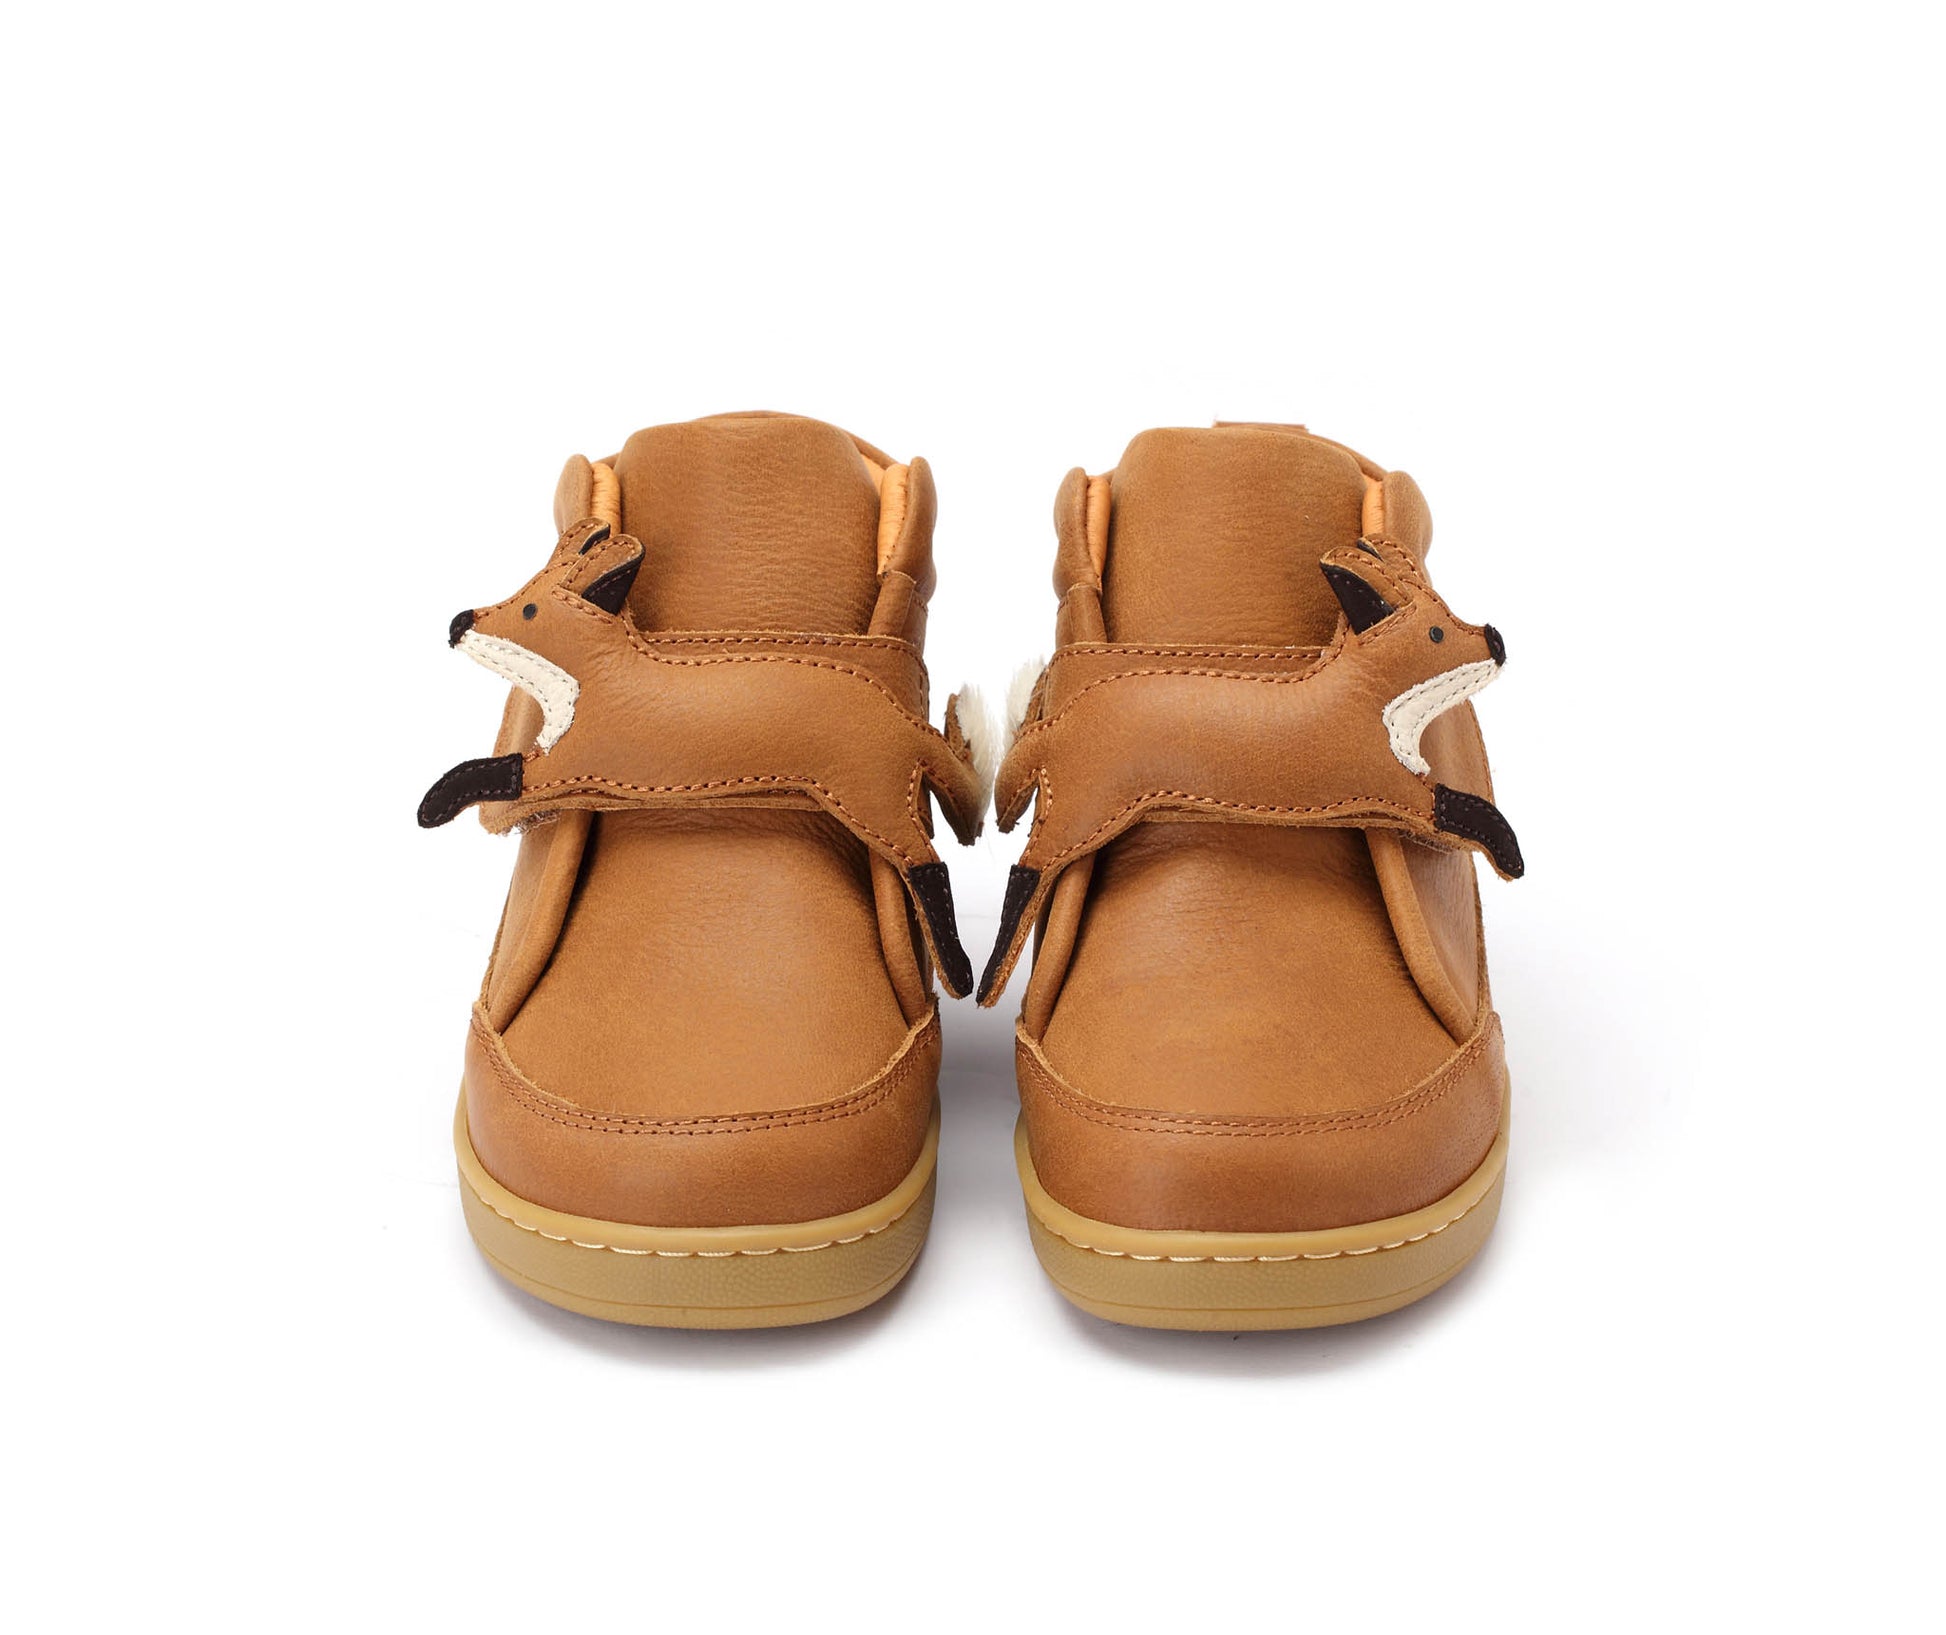 Donsje - Schuhe "Clo Fox" | fudge leather - Leja Concept Store